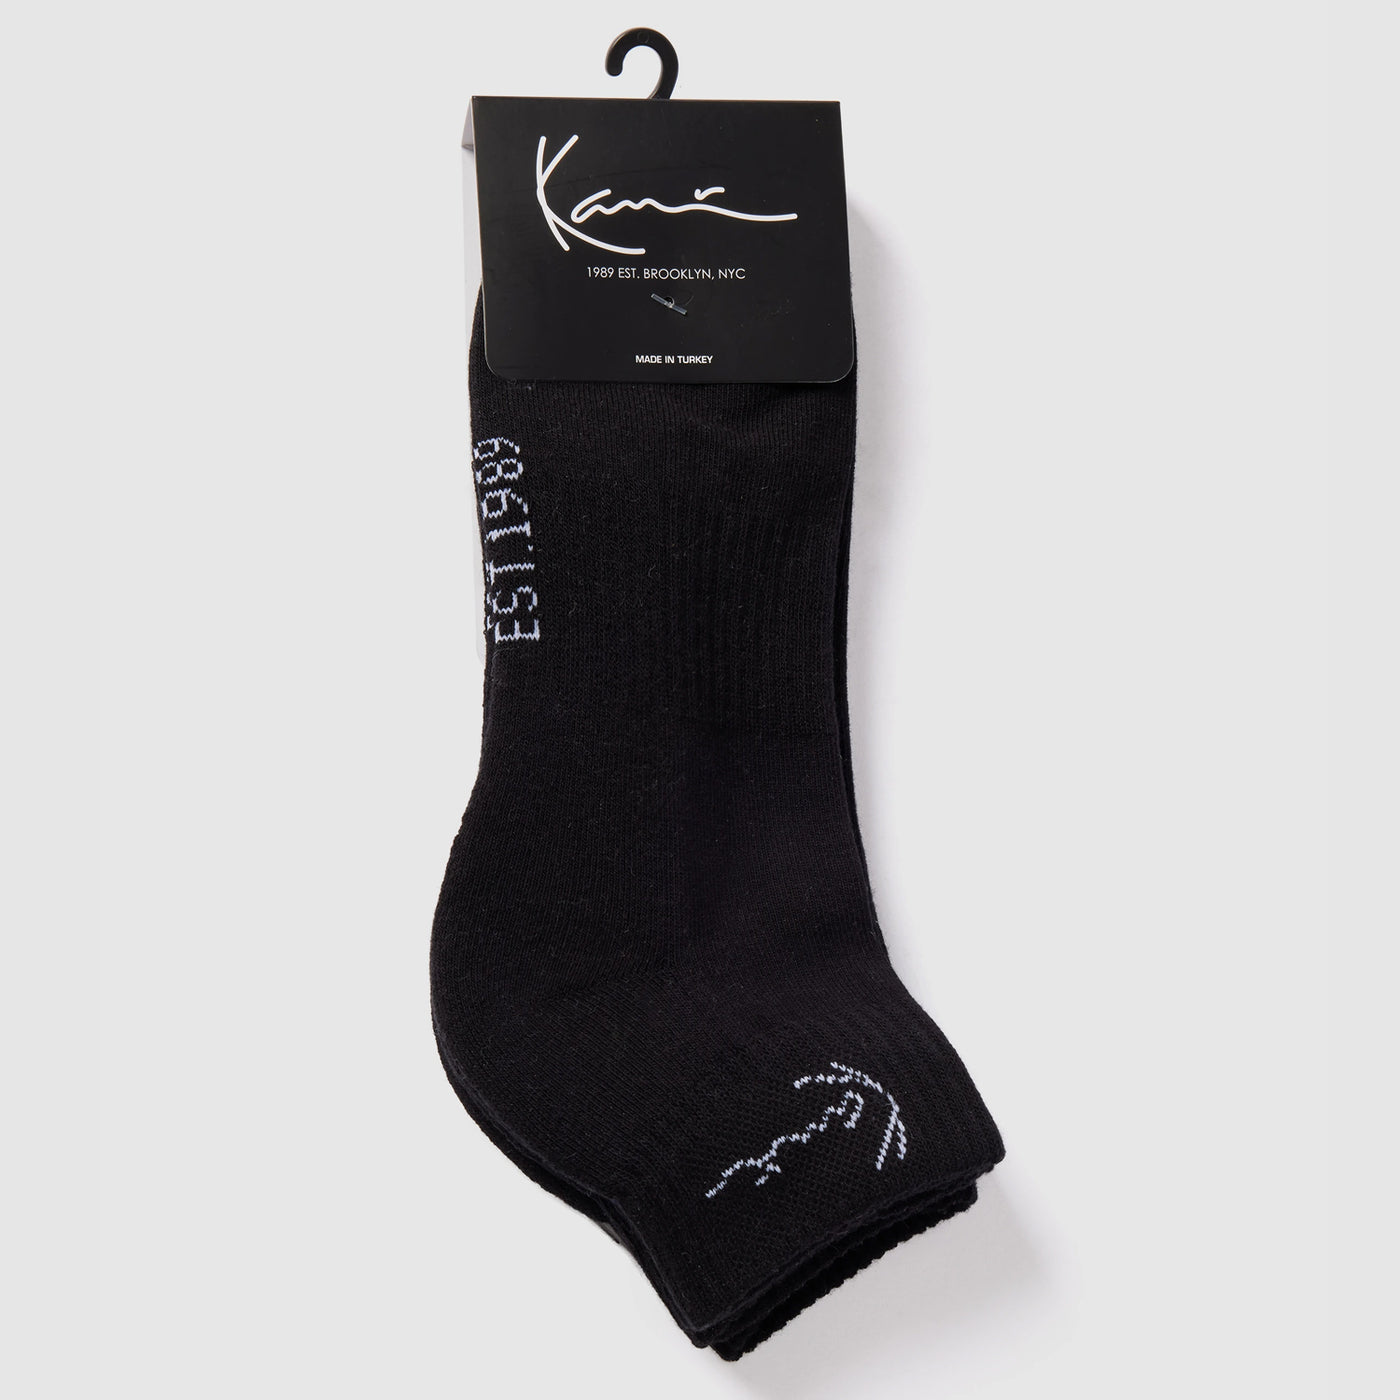 Karl Kani Signature Ankle Socks black